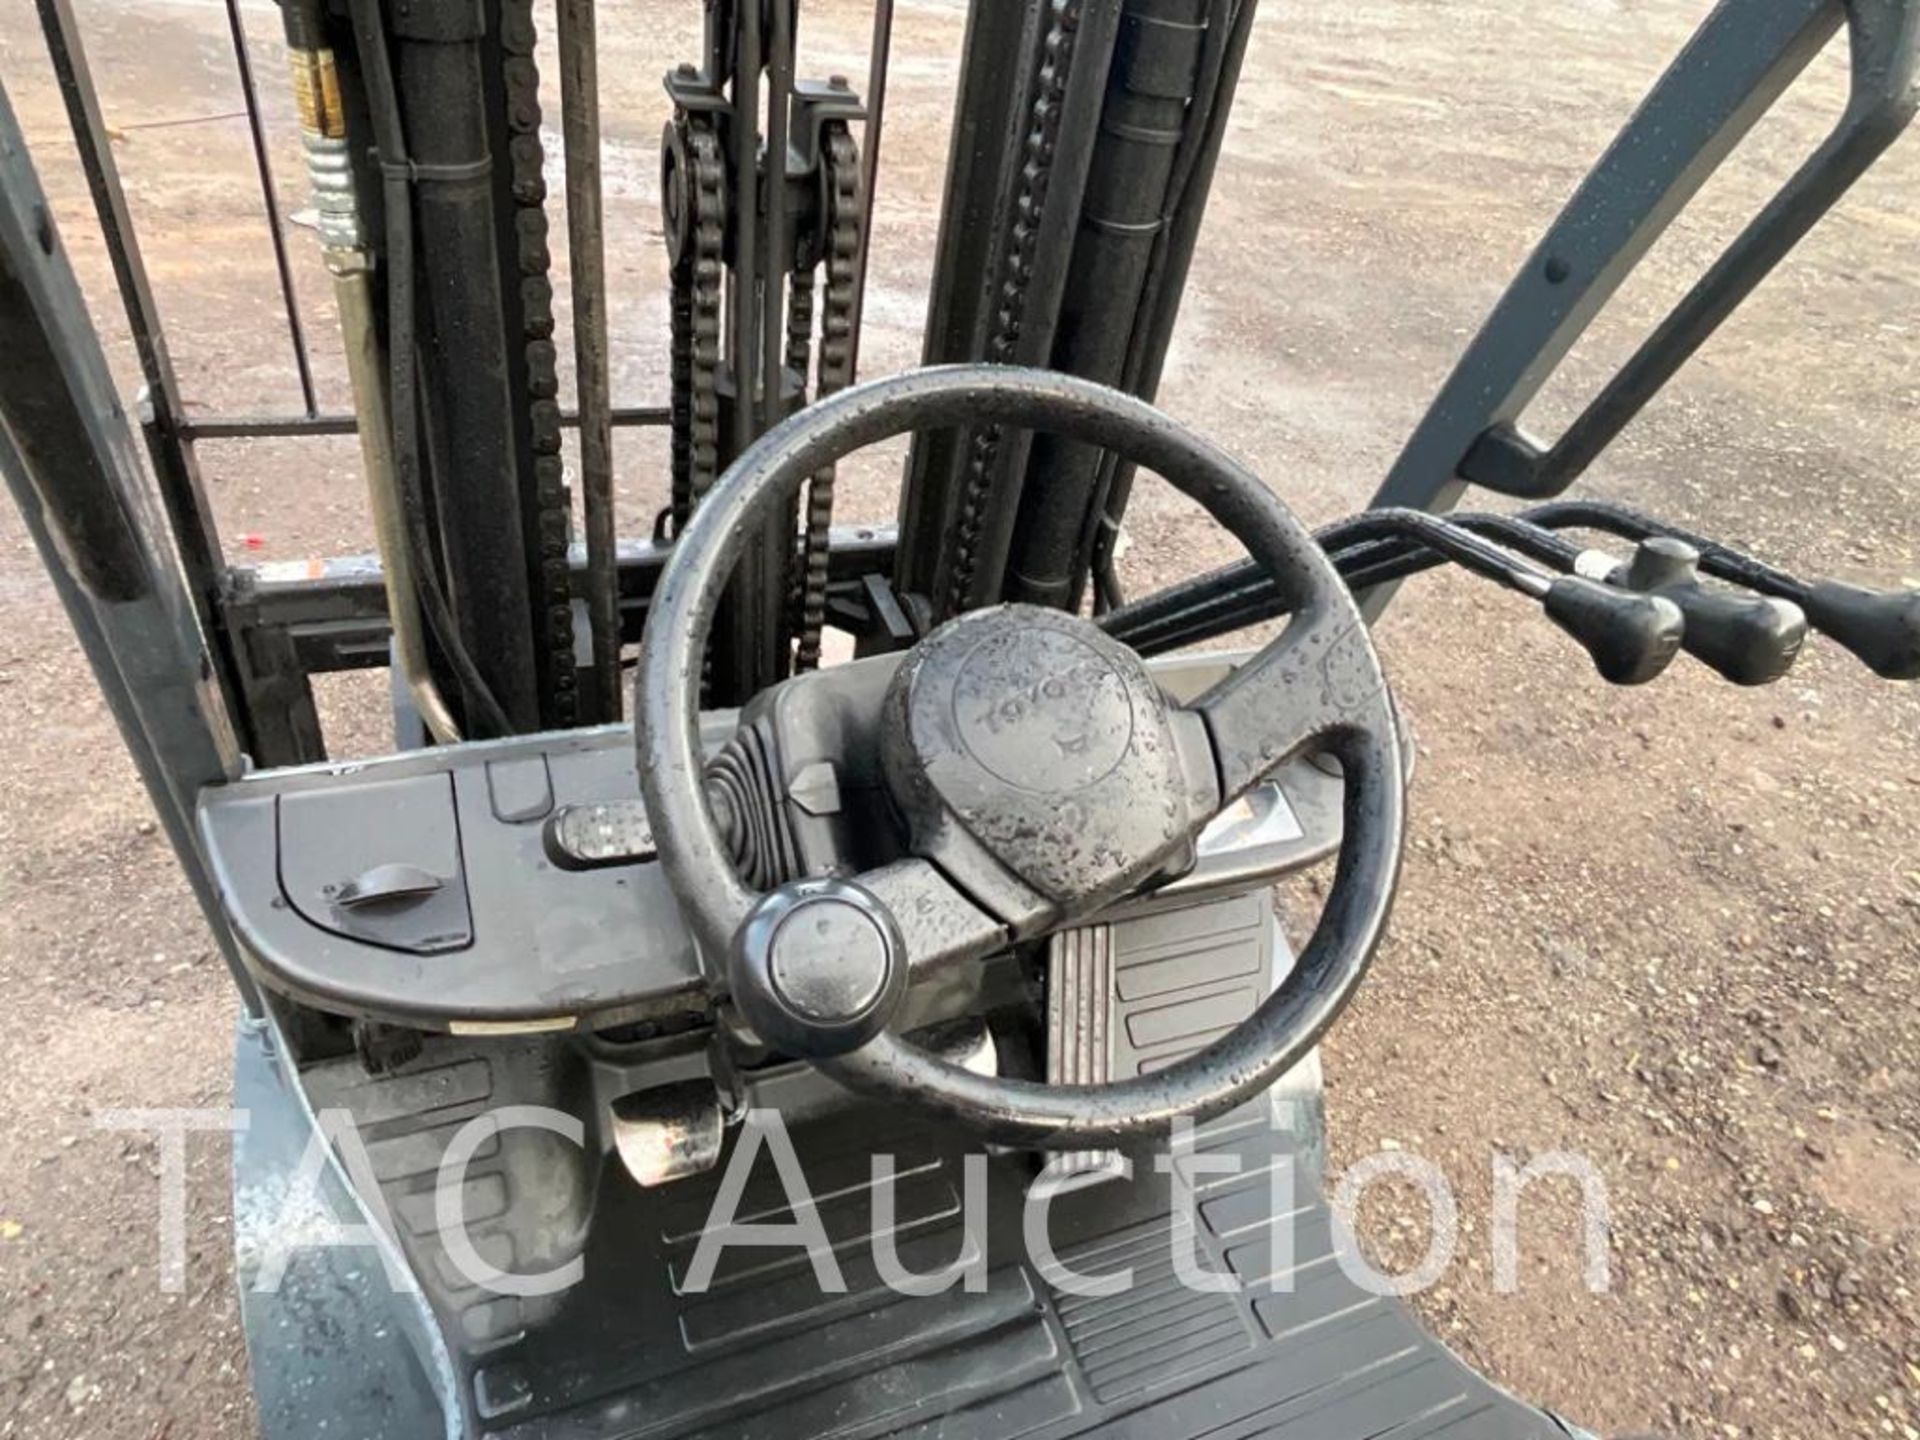 2018 Toyota 8FGCU30 6000lb Forklift - Image 13 of 23